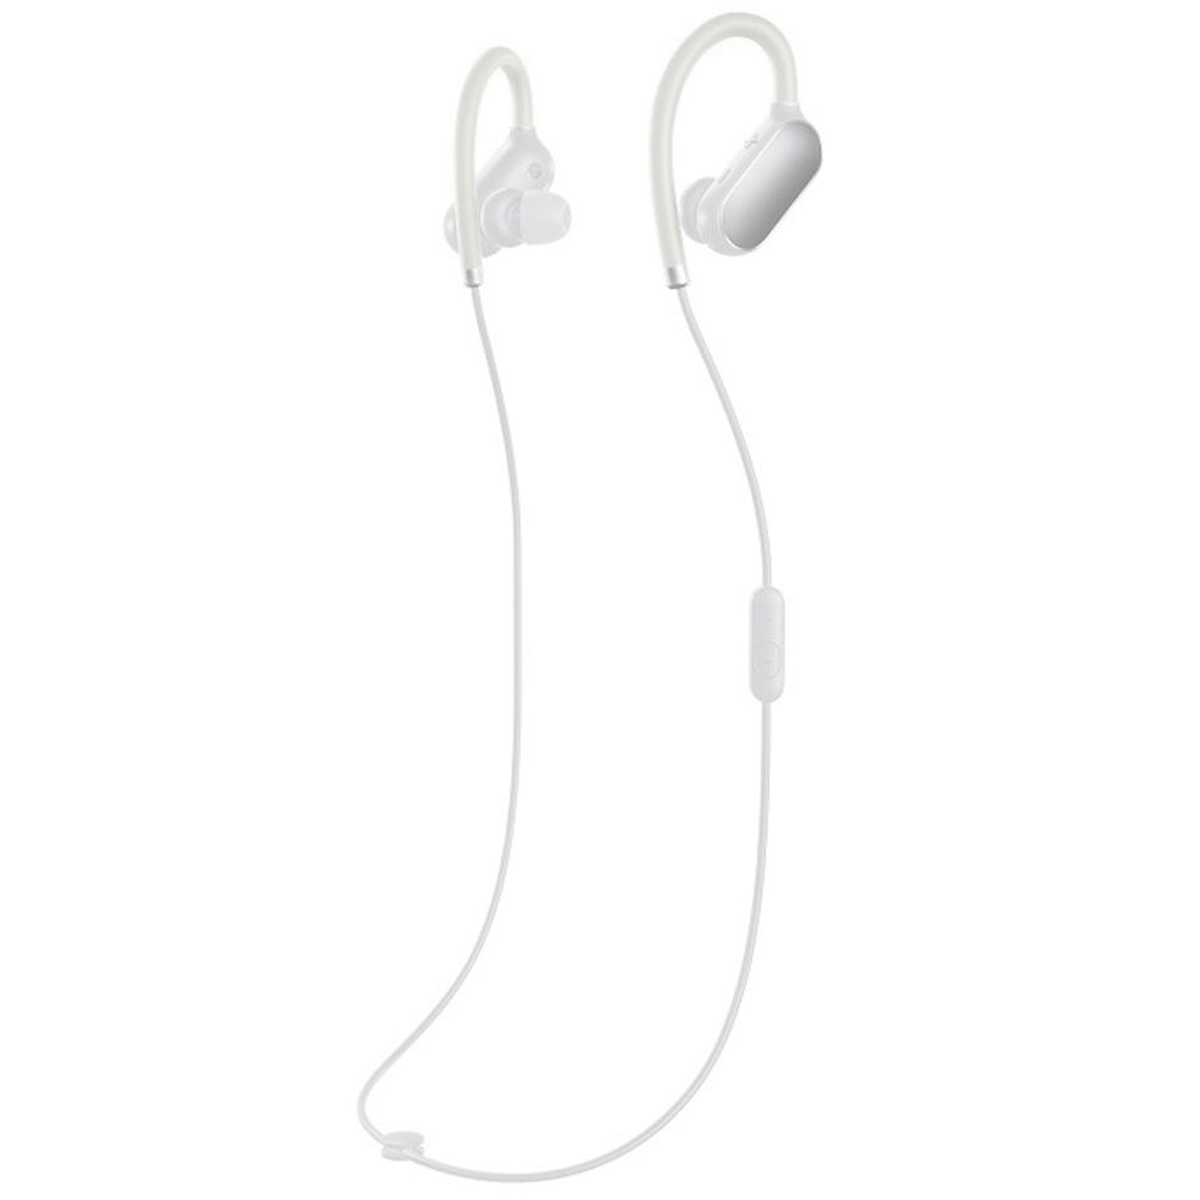 MI Sports Bluetooth In-Ear Earphones With Mic Black